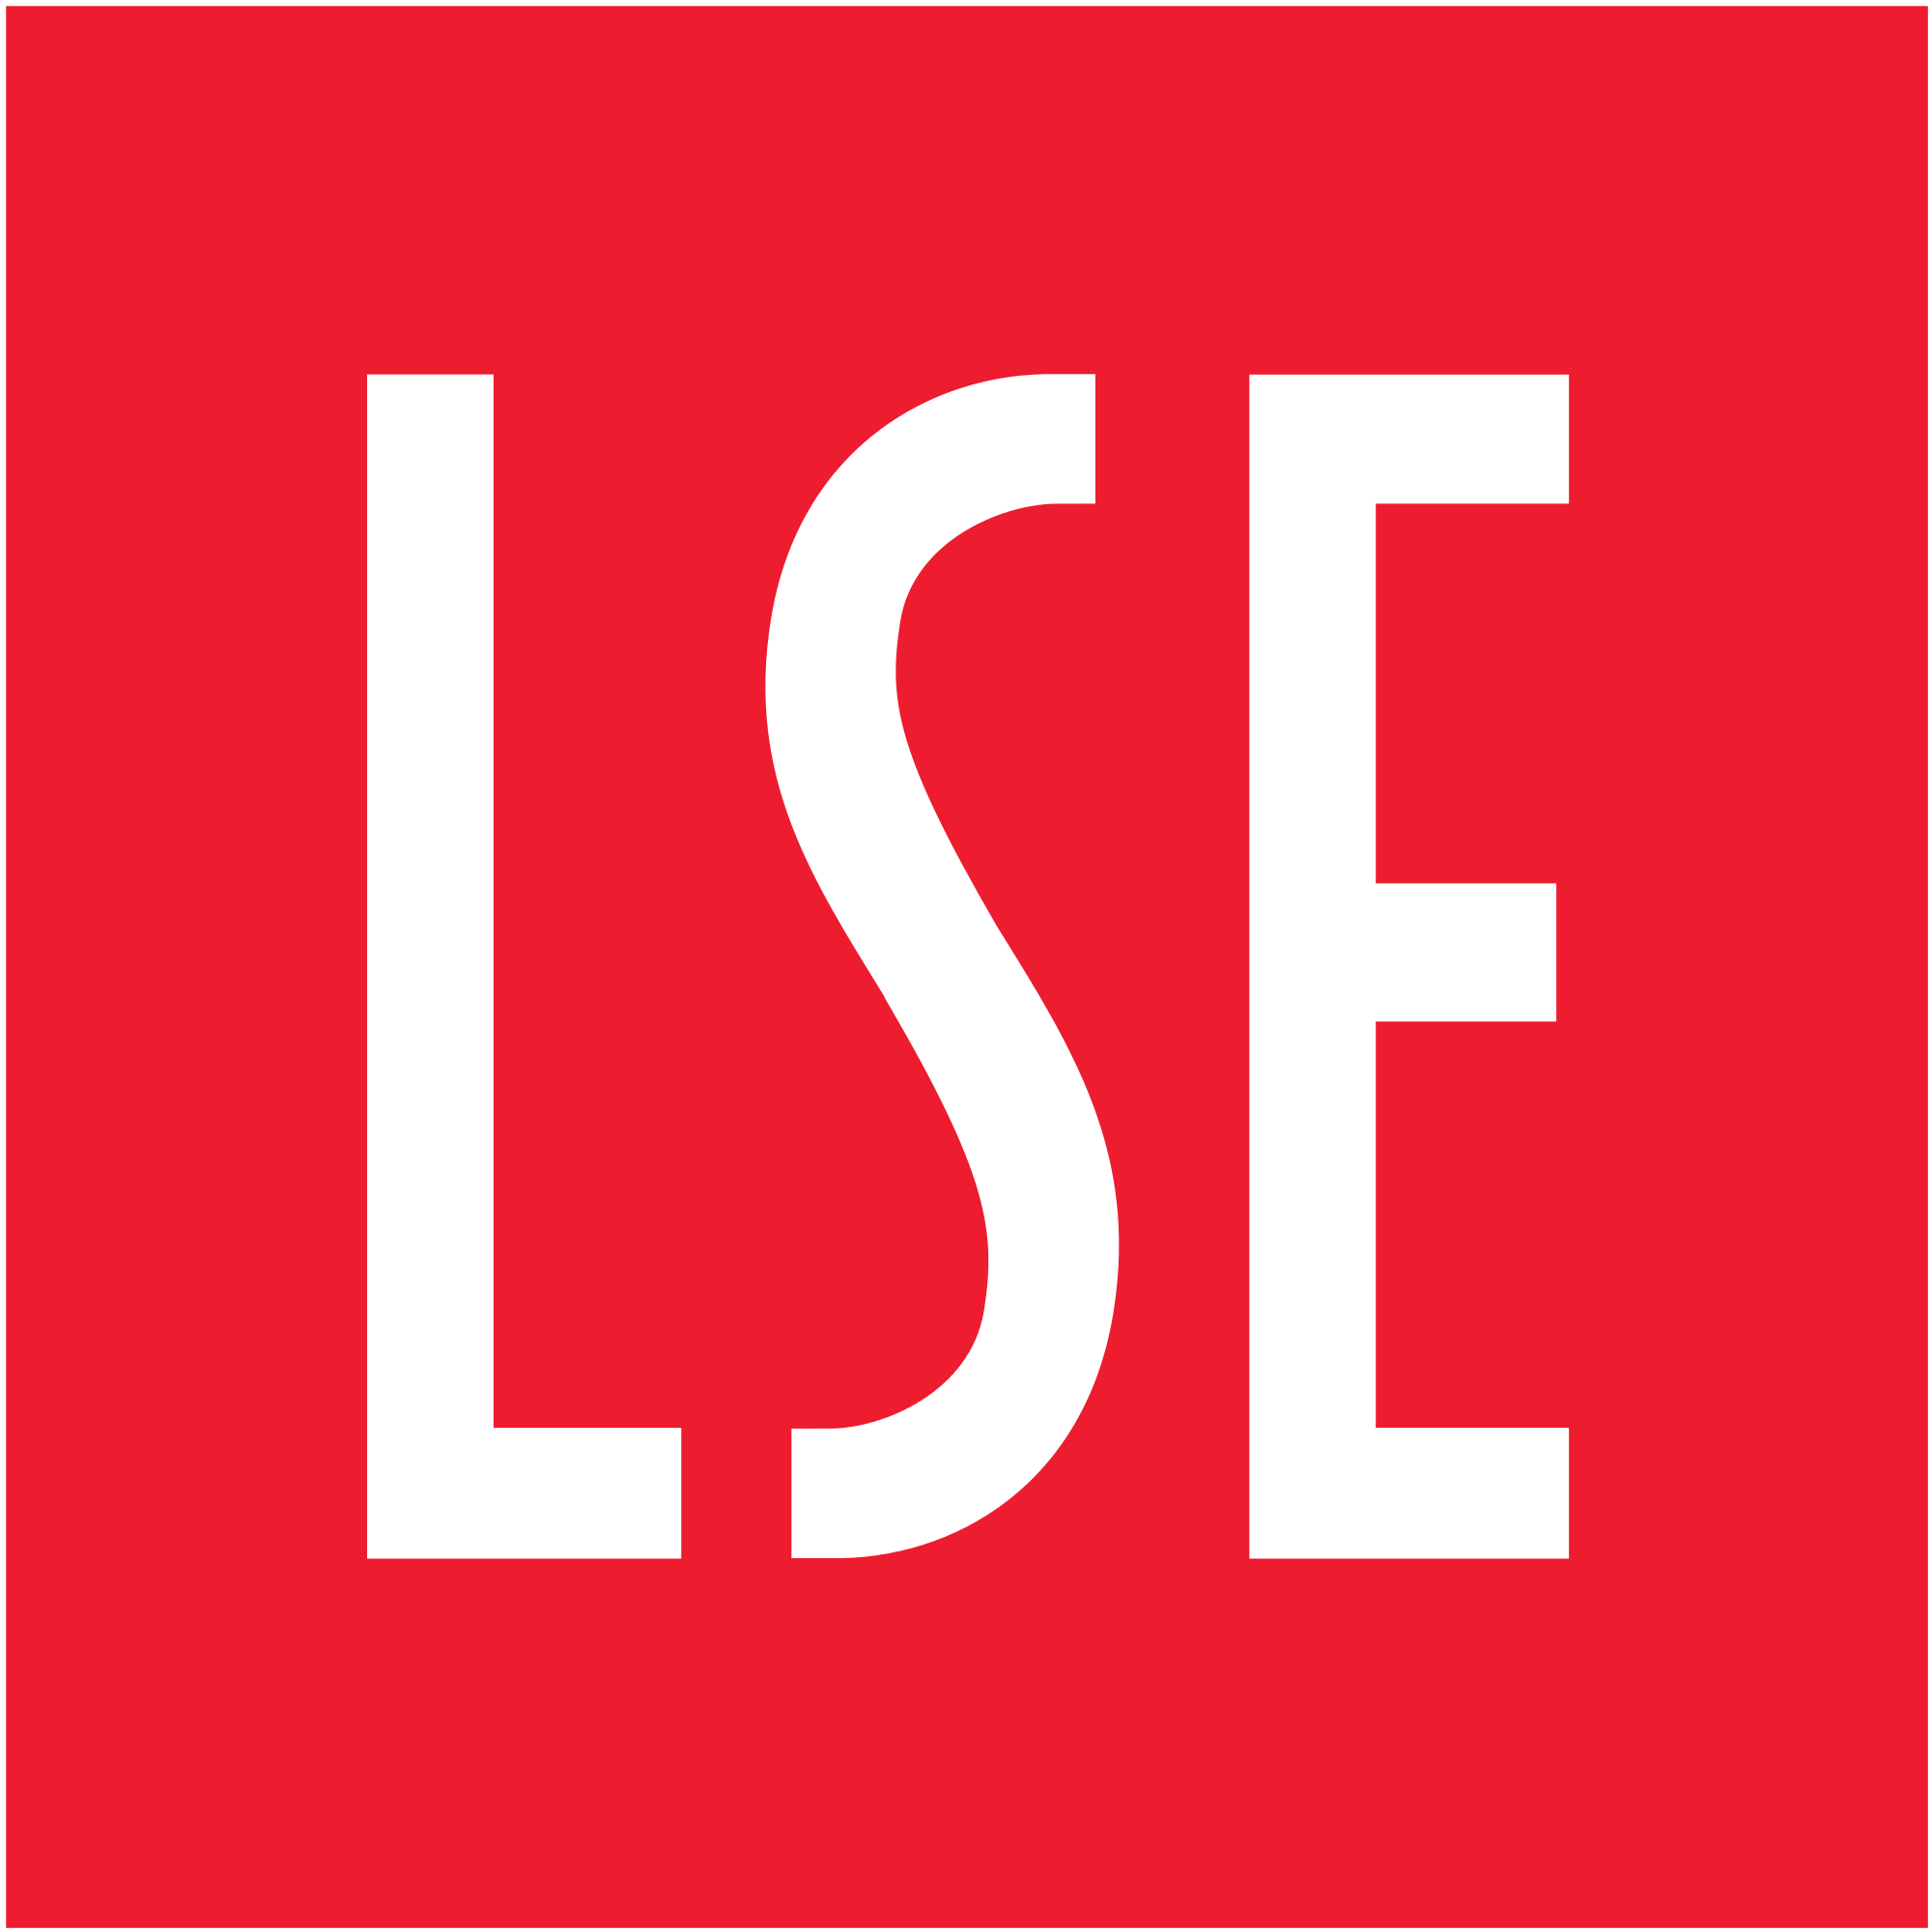 LSE - לוגו קטן